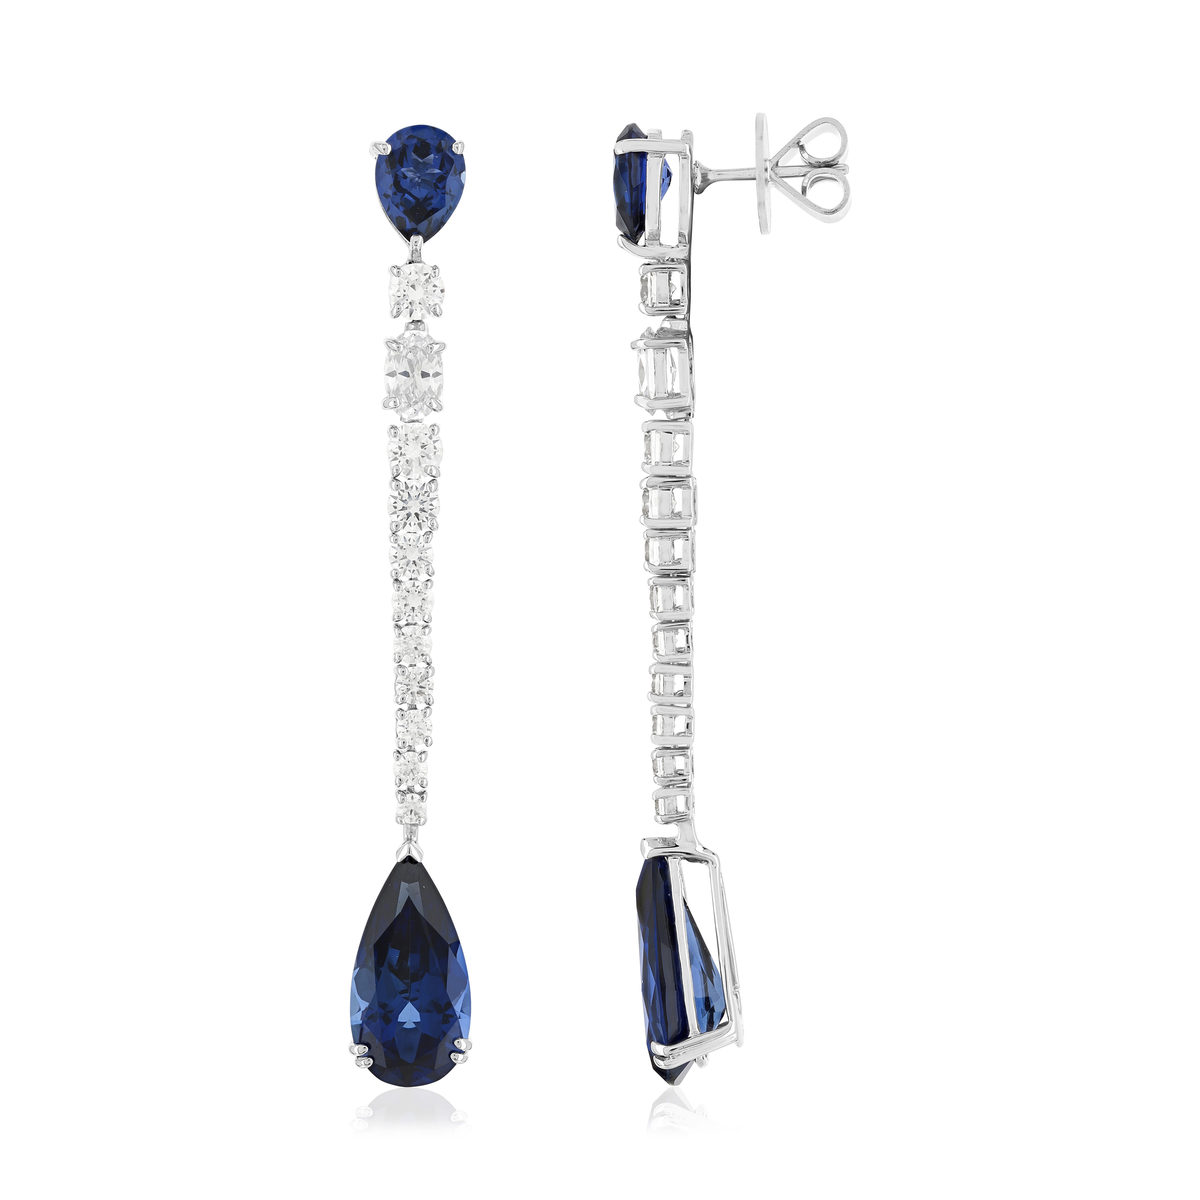 Boucles d'oreilles pendants argent 925, pierres synthétiques bleues zirconias - vue 2